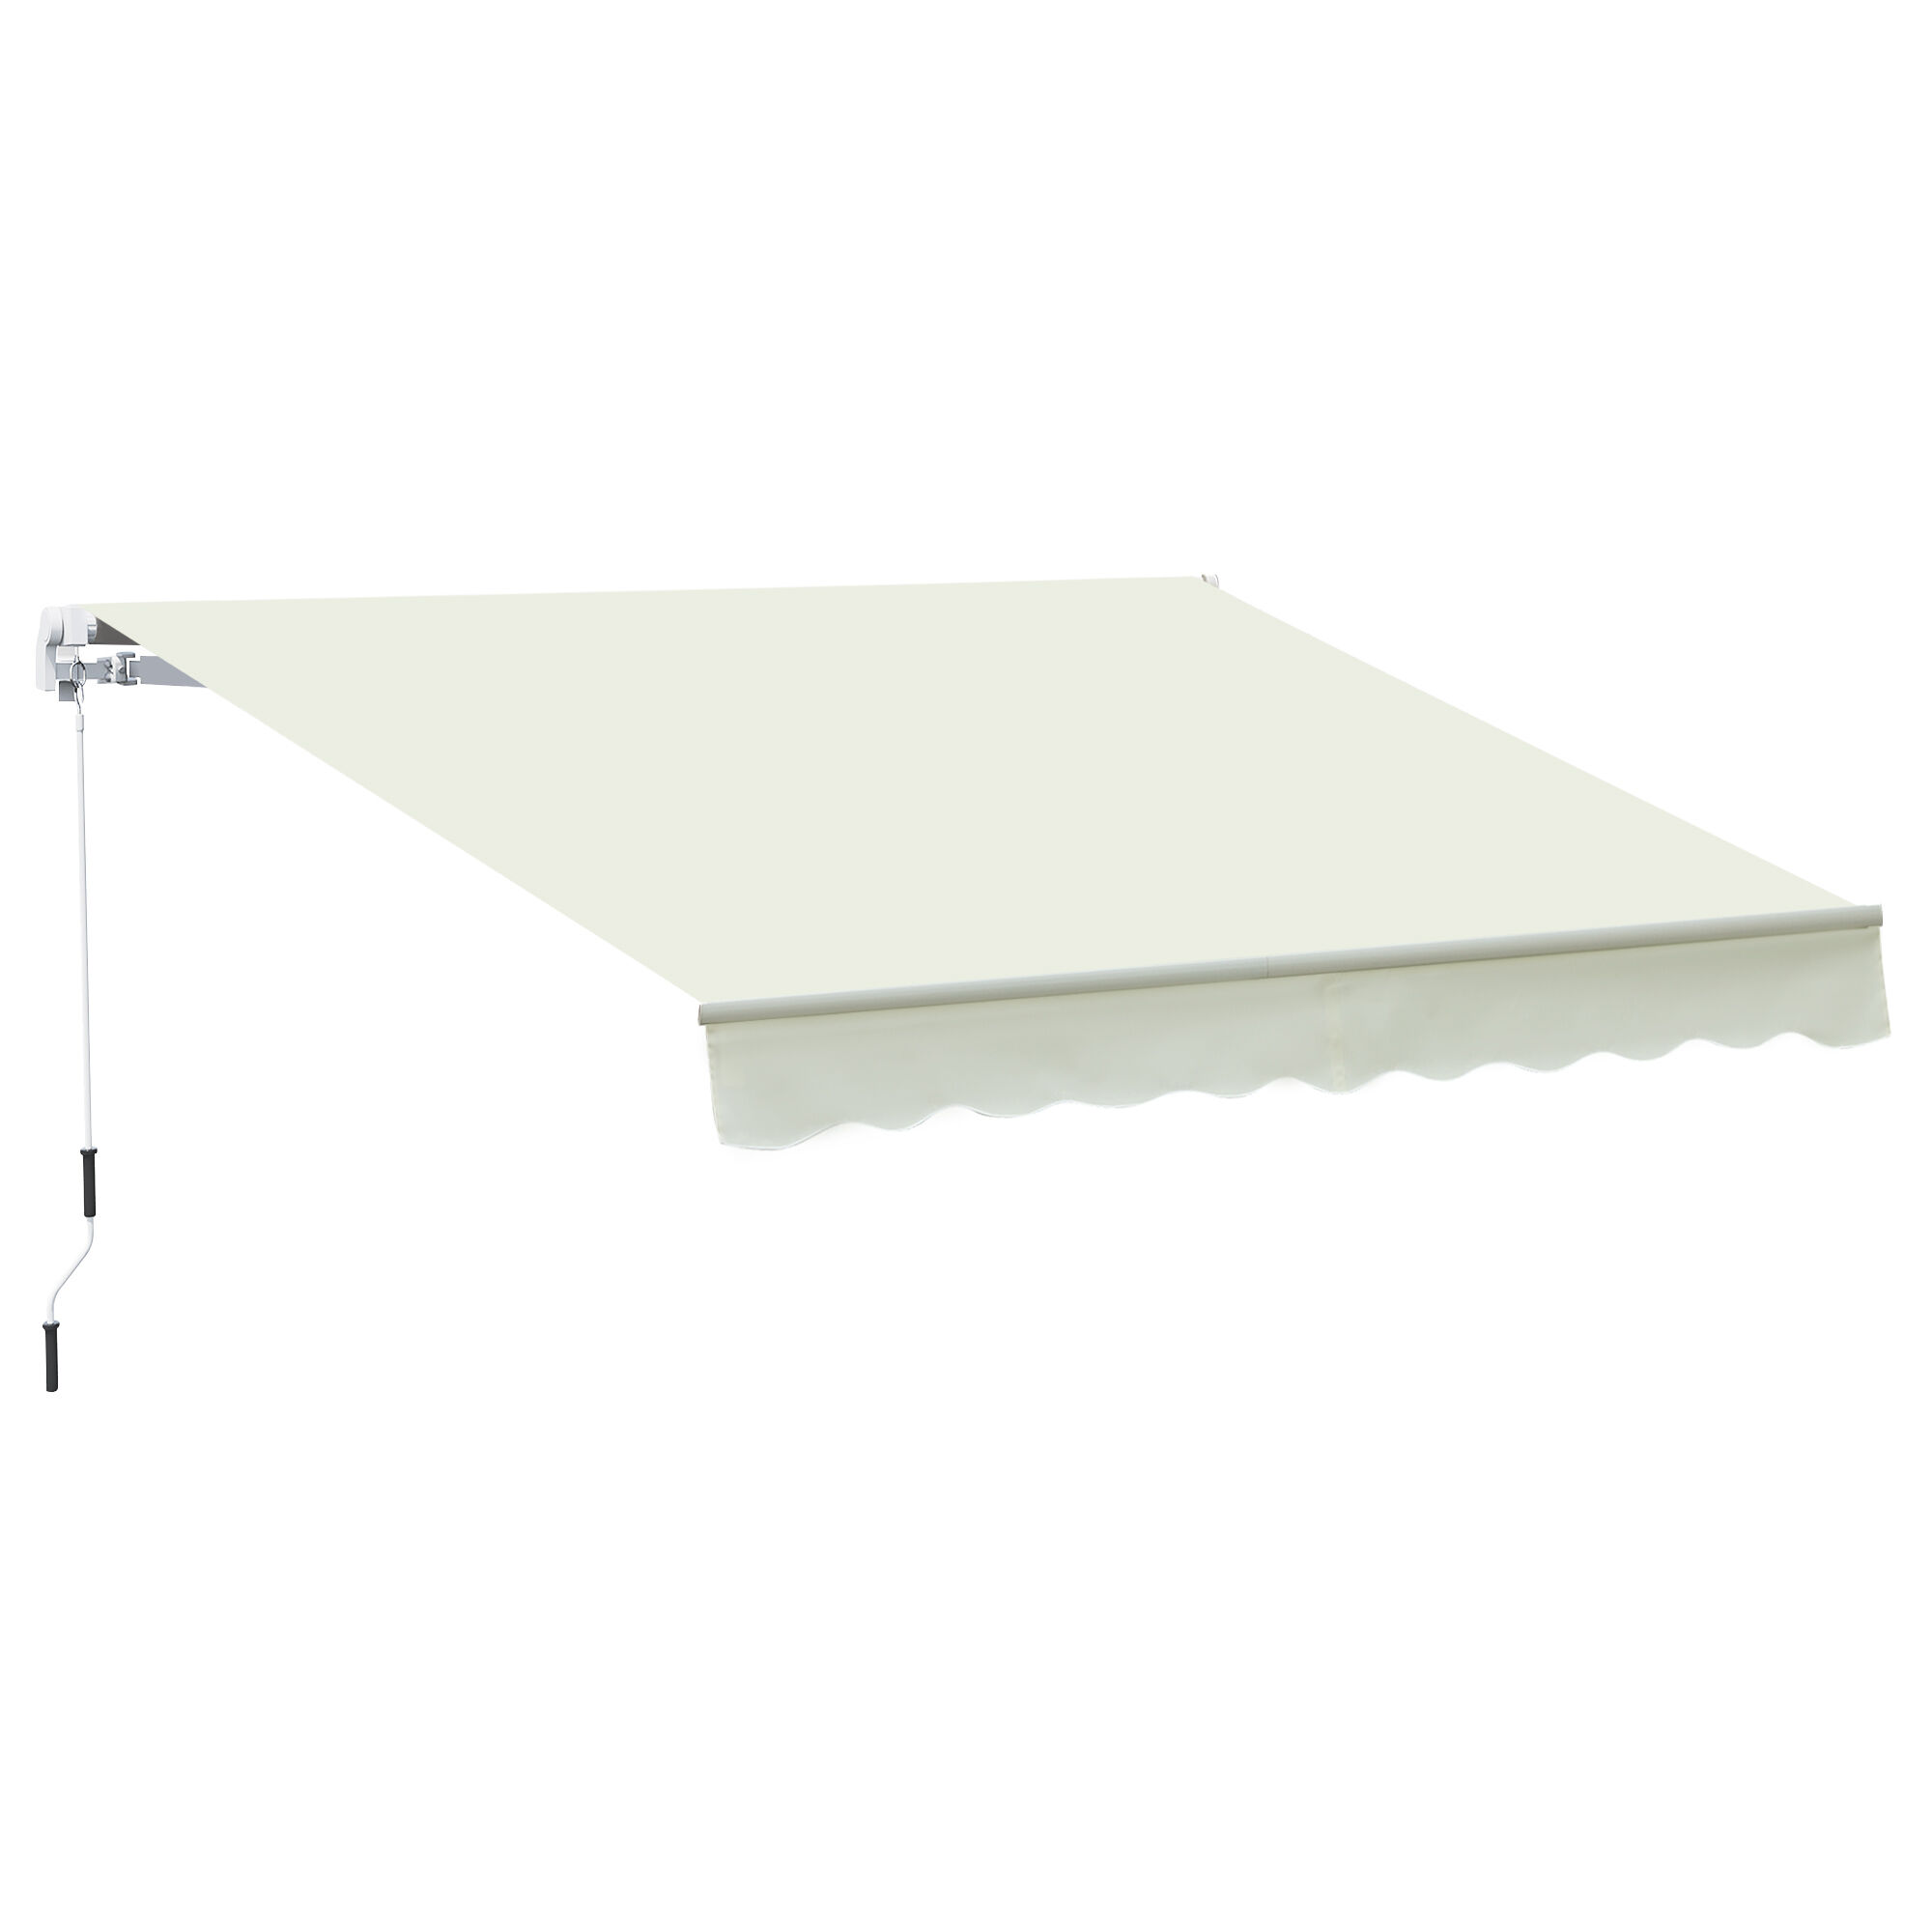 Outsunny Tenda da Sole Avvolgibile a Caduta Manuale per Porte e Finestre, in Alluminio e Poliestere Anti-UV, 295x245cm, Bianco